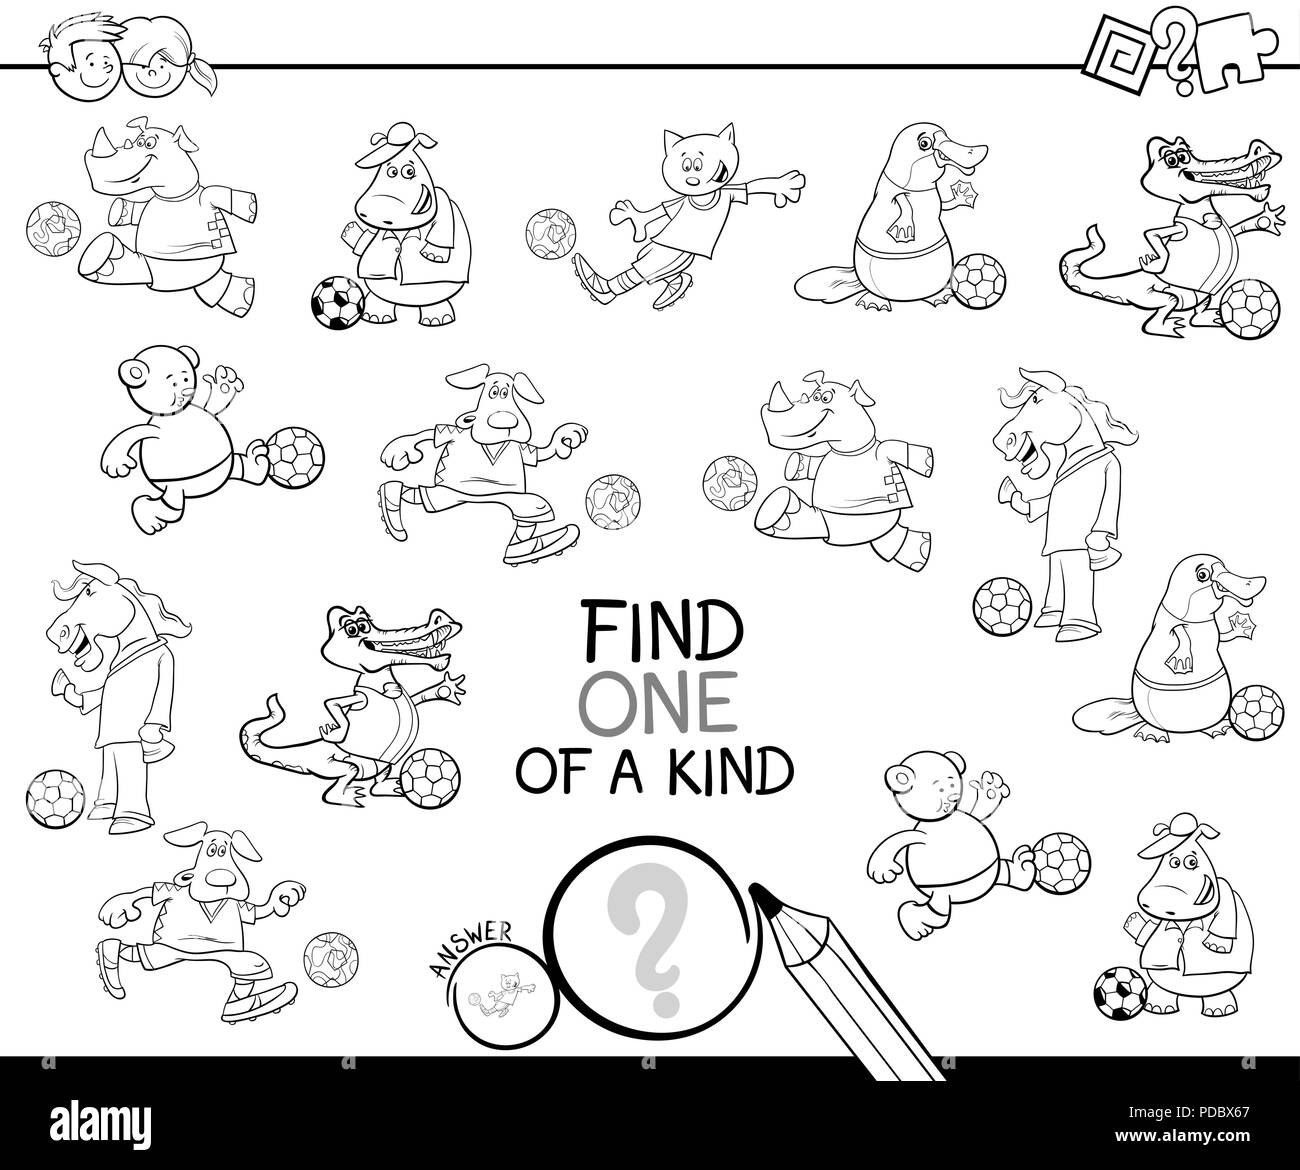 Bianco e Nero Cartoon illustrazione di trovare un tipo di immagine attività didattica gioco per bambini con animali i giocatori di calcio caratteri Colo Illustrazione Vettoriale